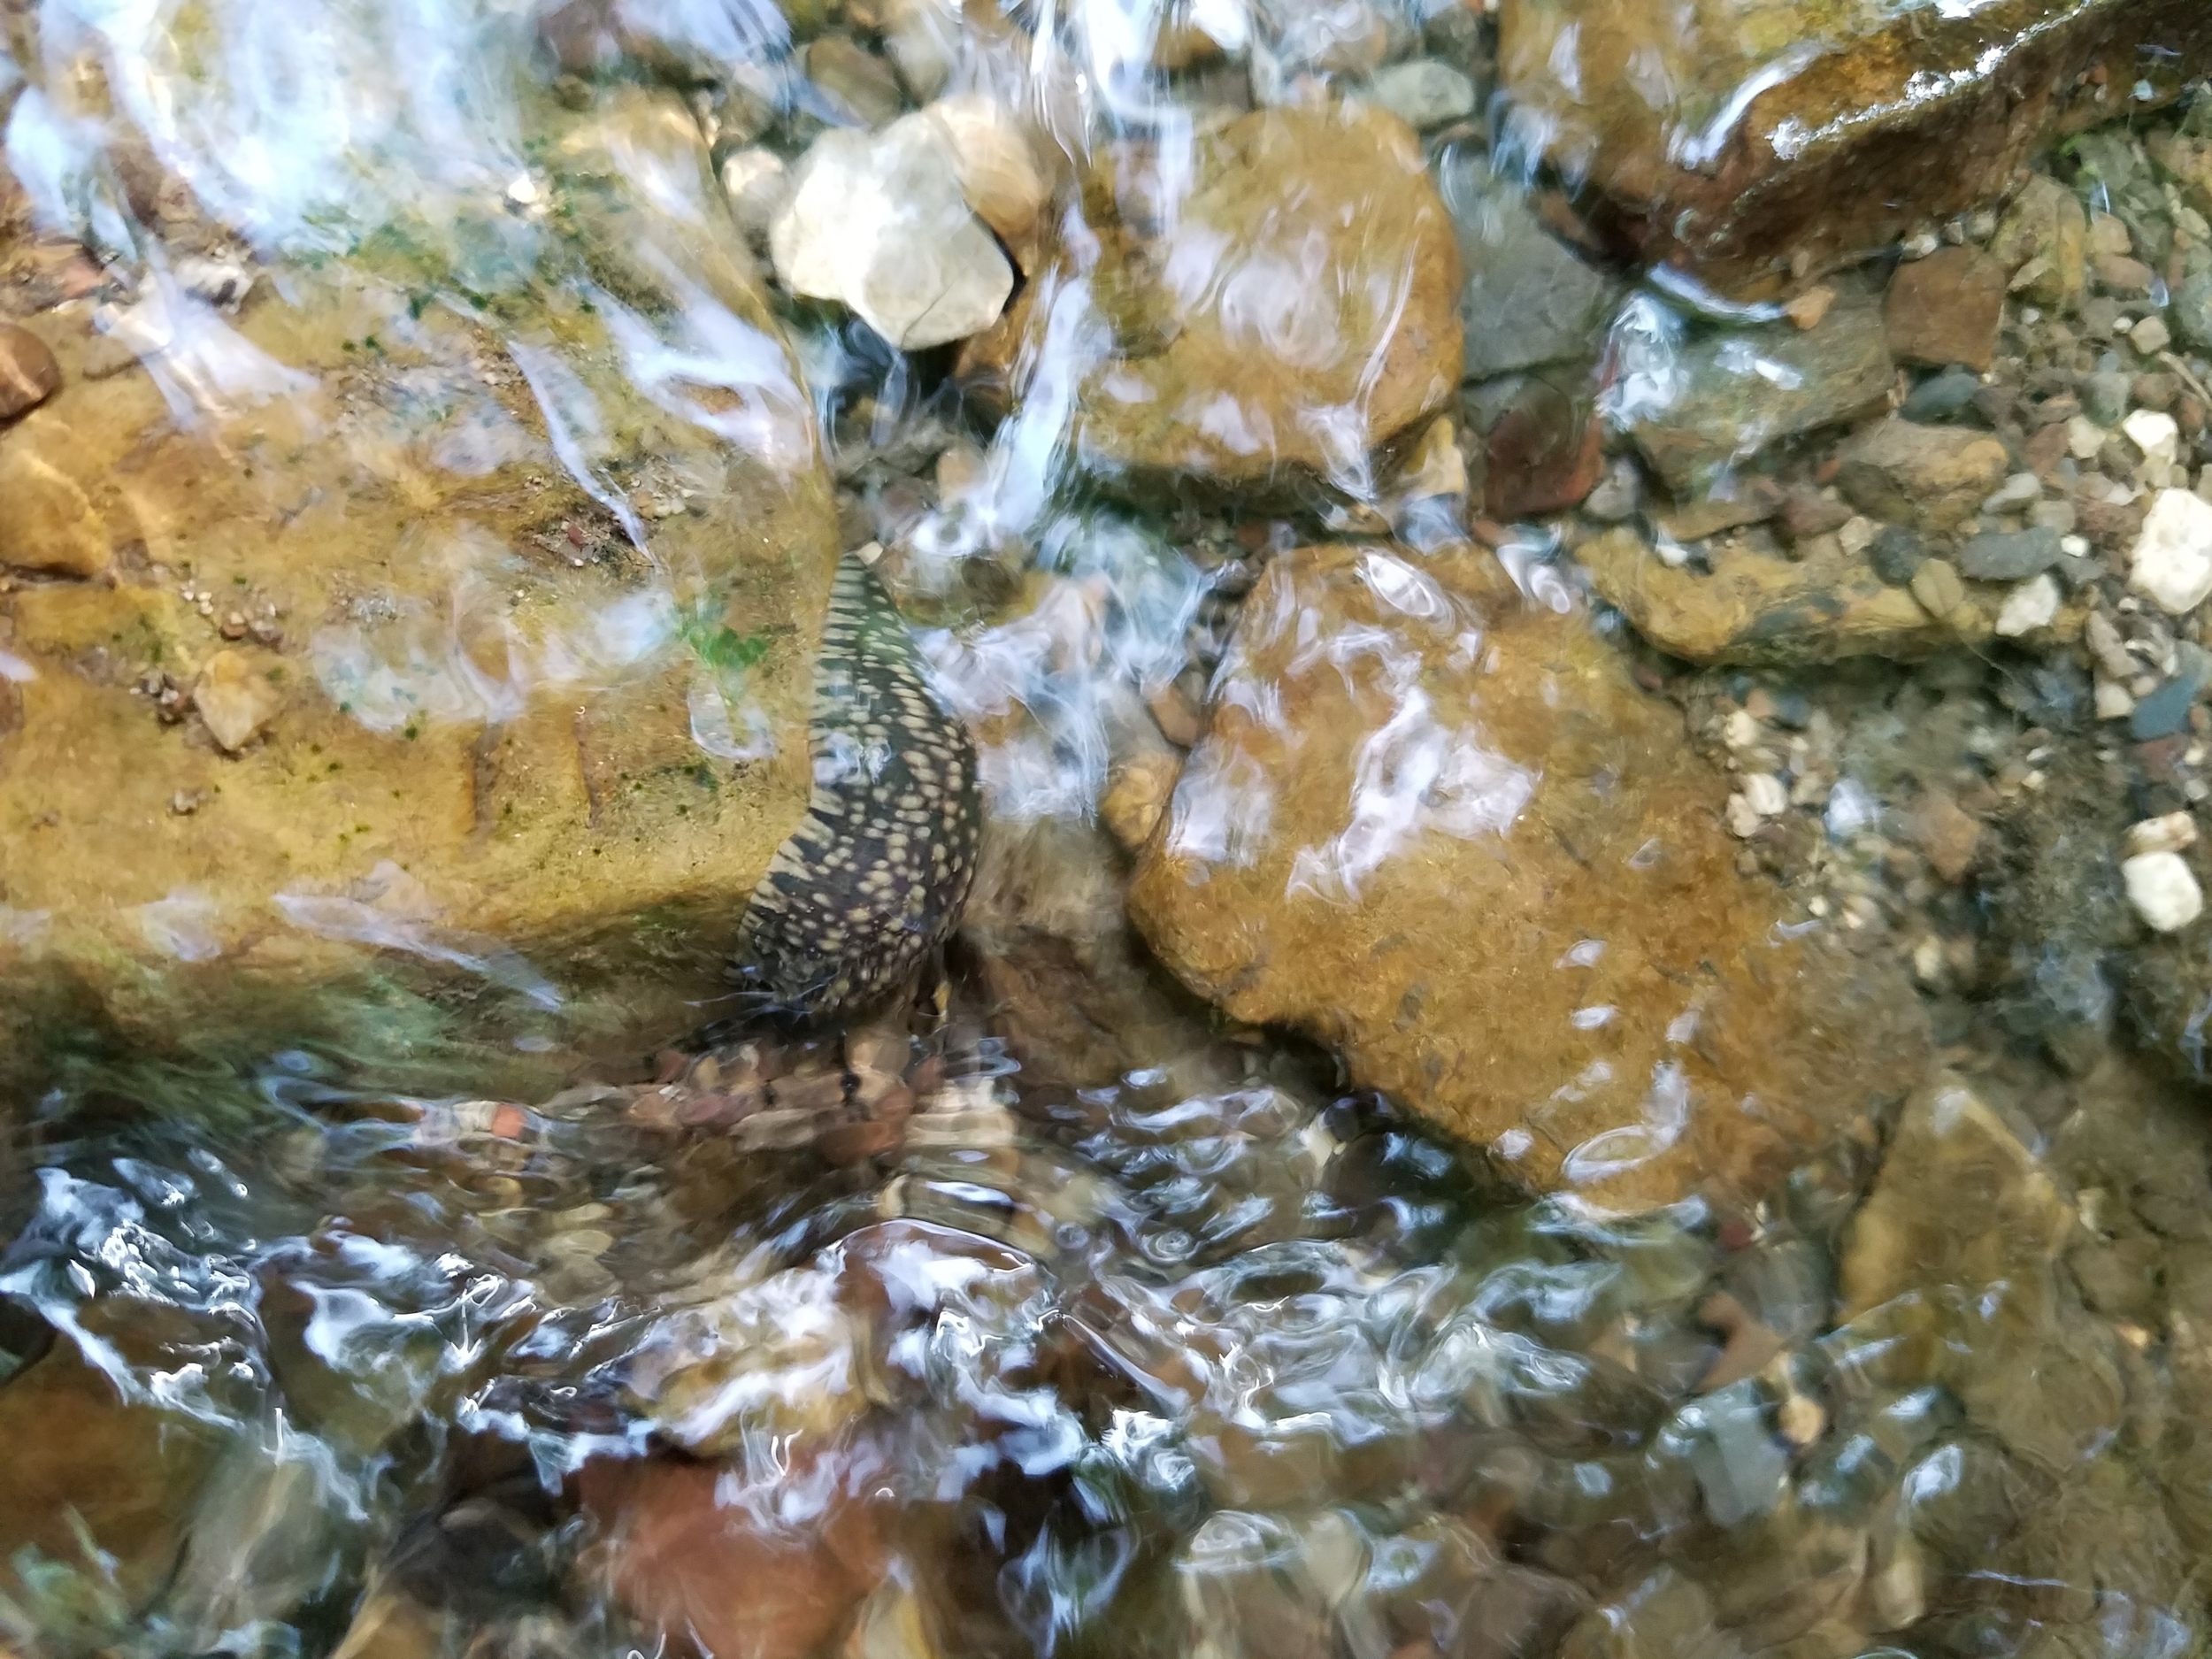 Placobdella leech in a stream - Arkansas